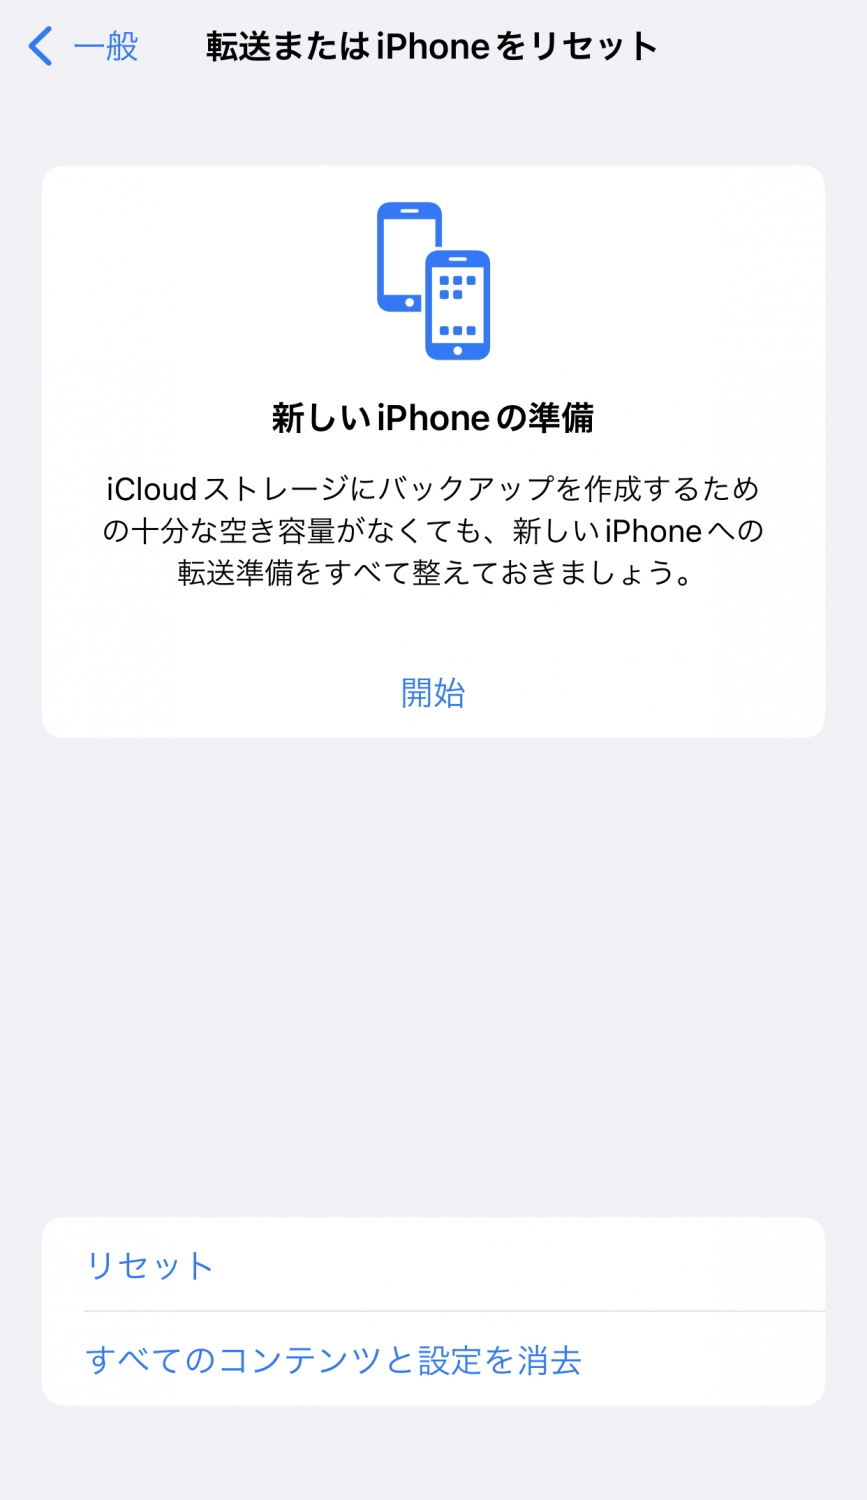 iOS 15の機能の紹介。無料で容量無制限の一時的なバックアップを行うことができます。